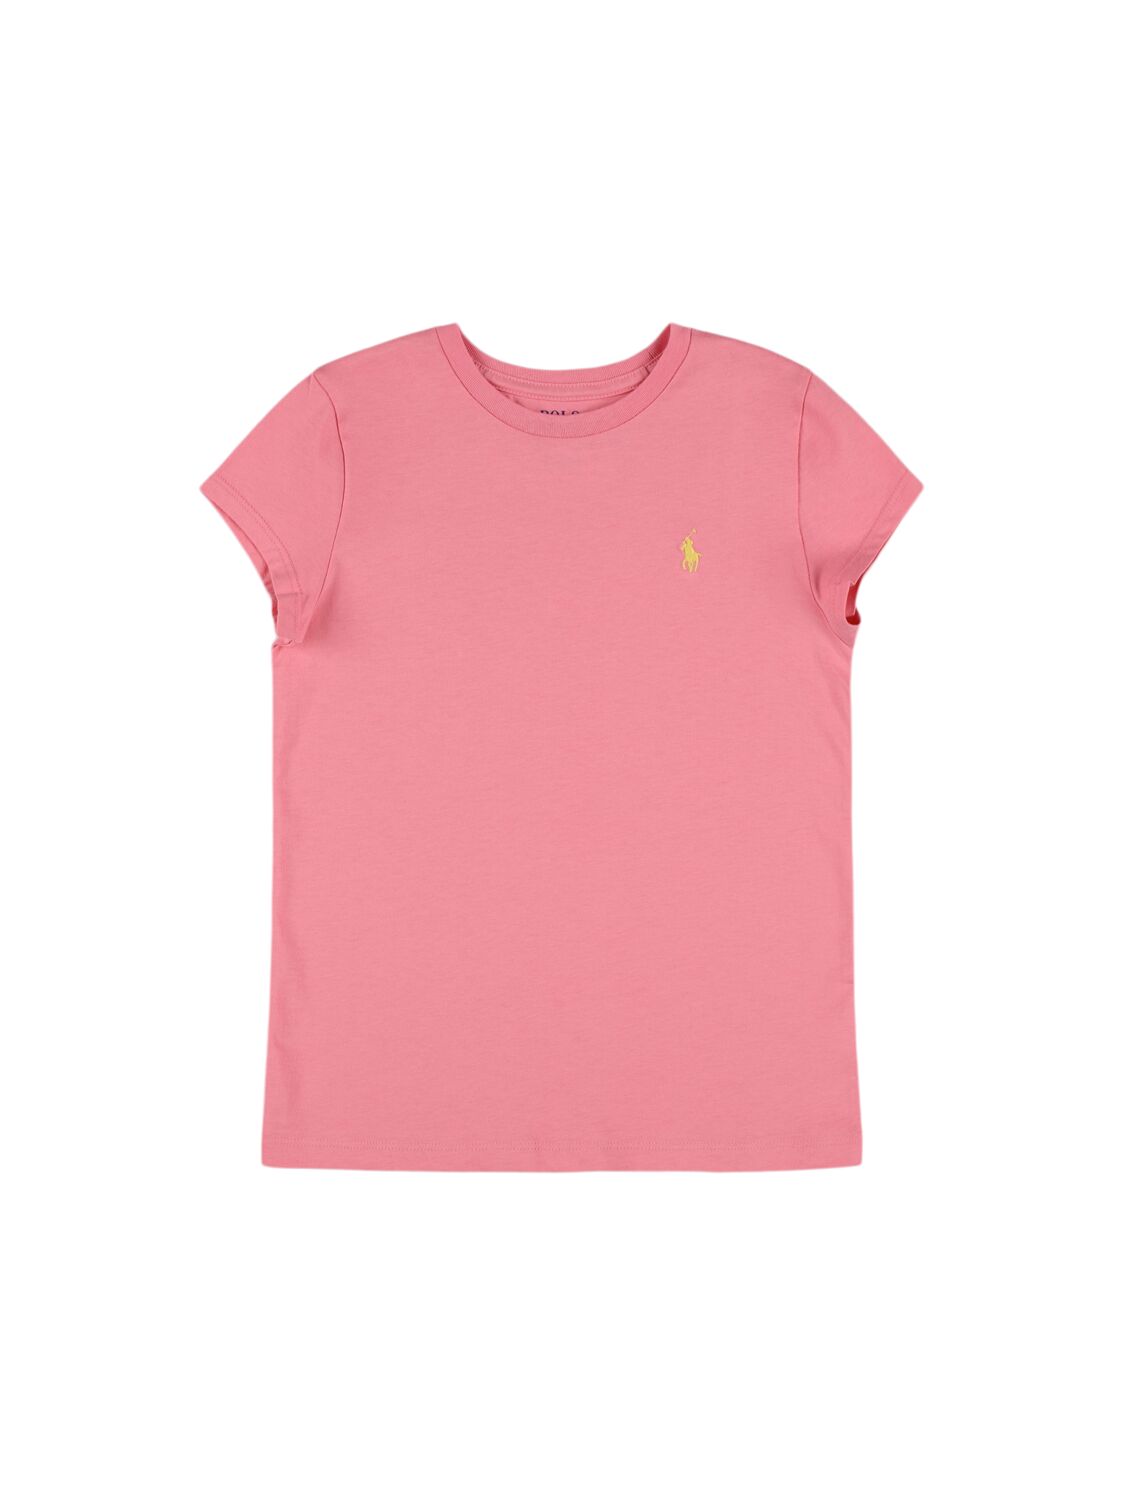 Ralph Lauren Babies' Logo Cotton Jersey T-shirt In Pink